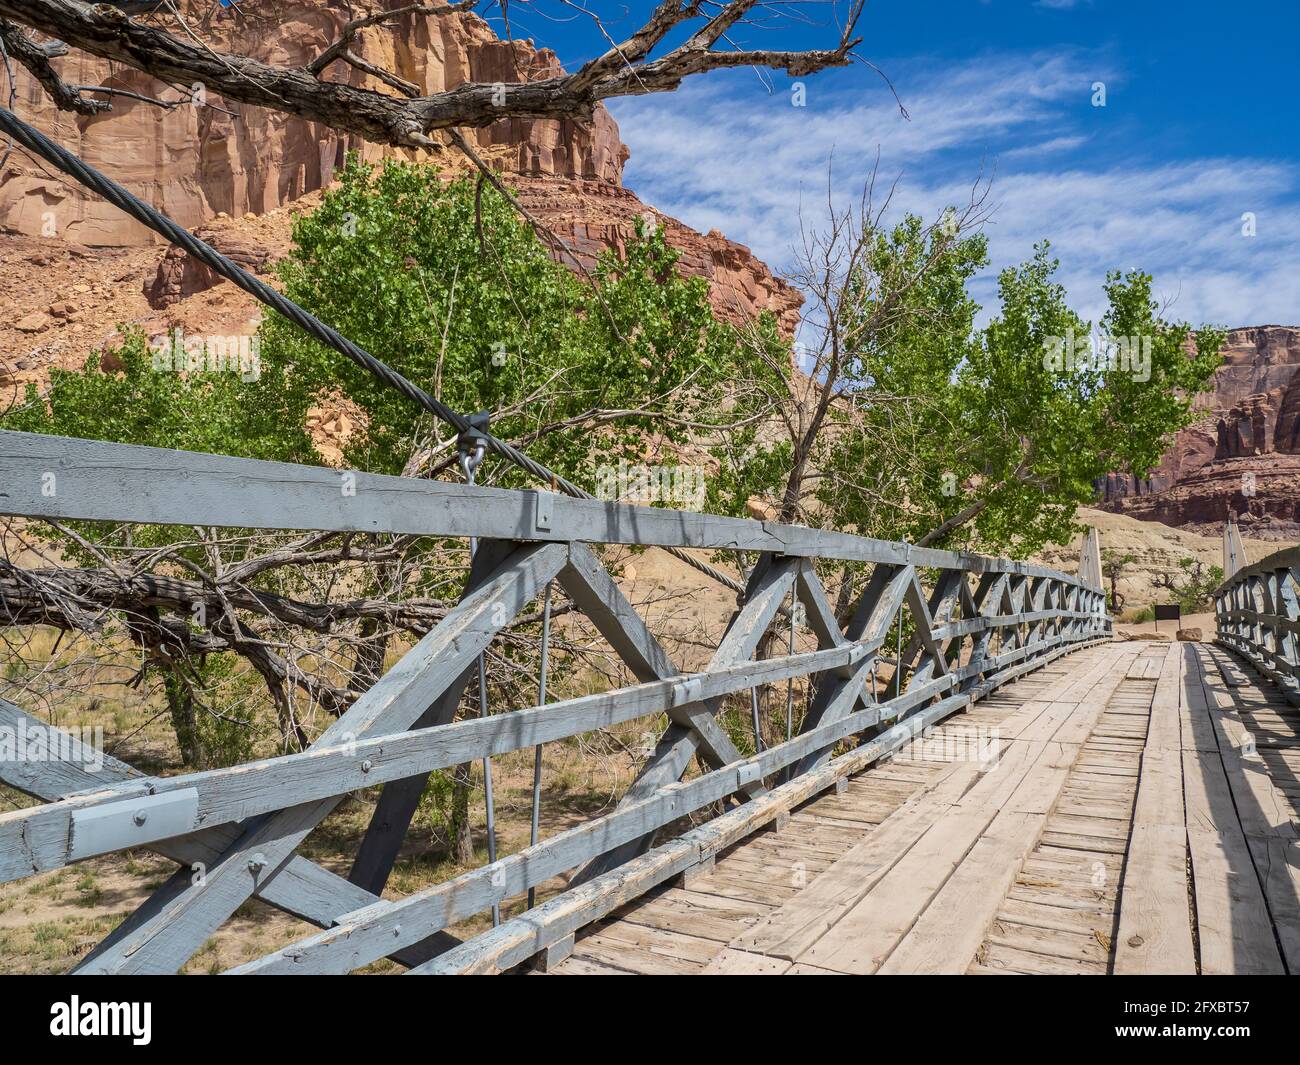 El histórico puente colgante de San Rafael, Buckhorn Draw Road, área de oleaje de San Rafael al noroeste de Green River, Utah. Foto de stock